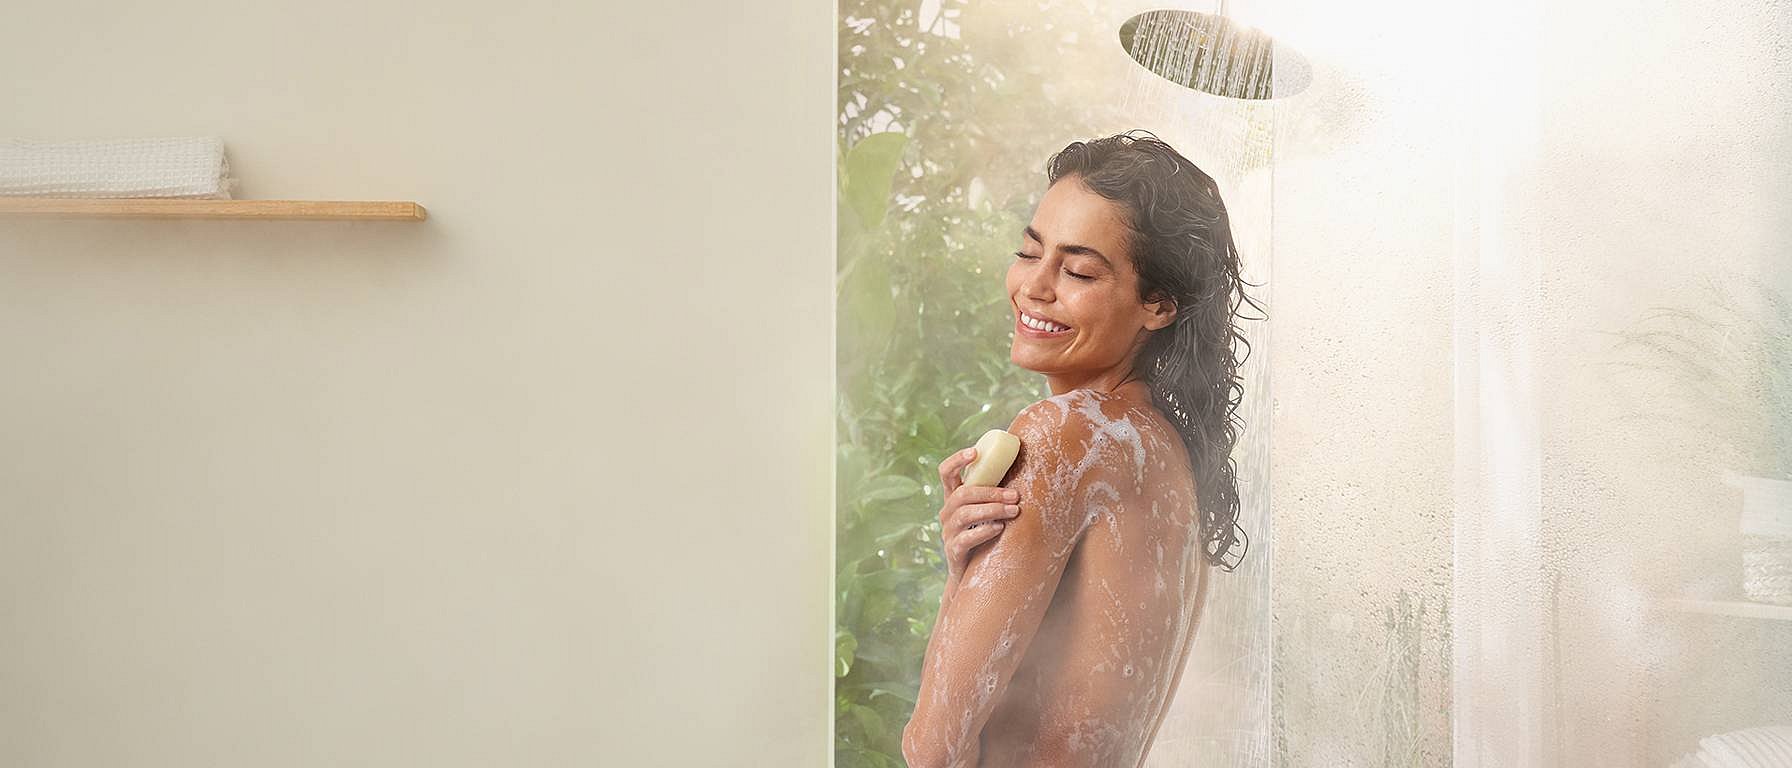 La donna usa il sapone sotto la doccia